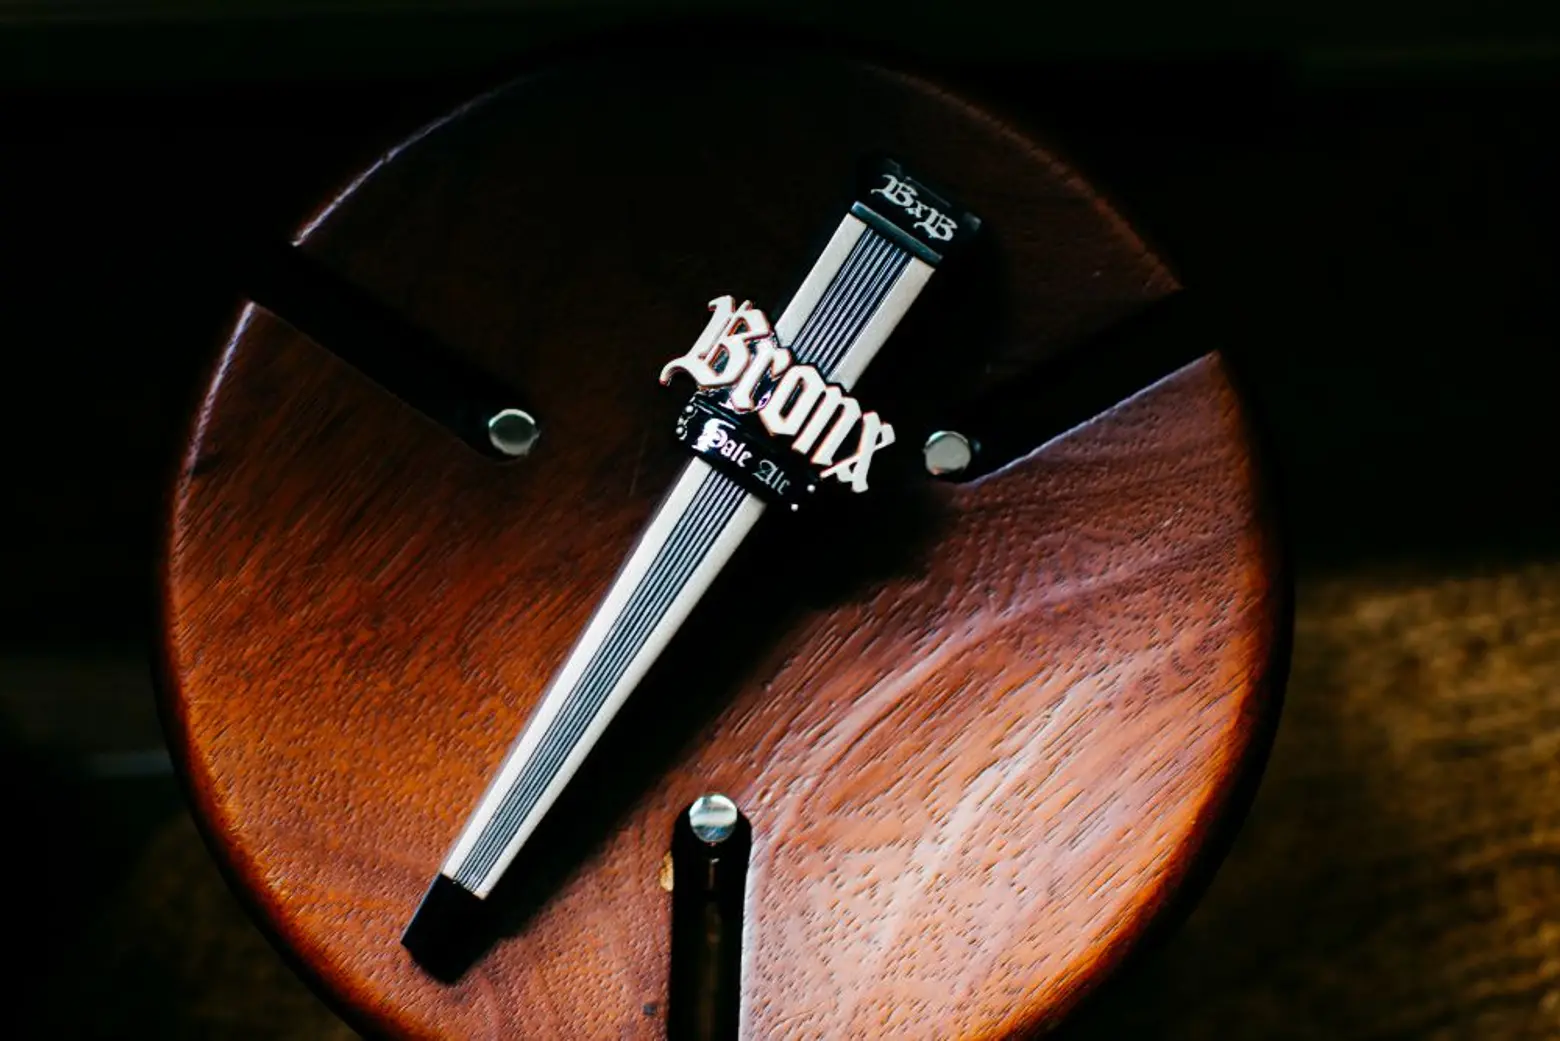 Carlos Alimurung, Bronx Brewery beer tap handle